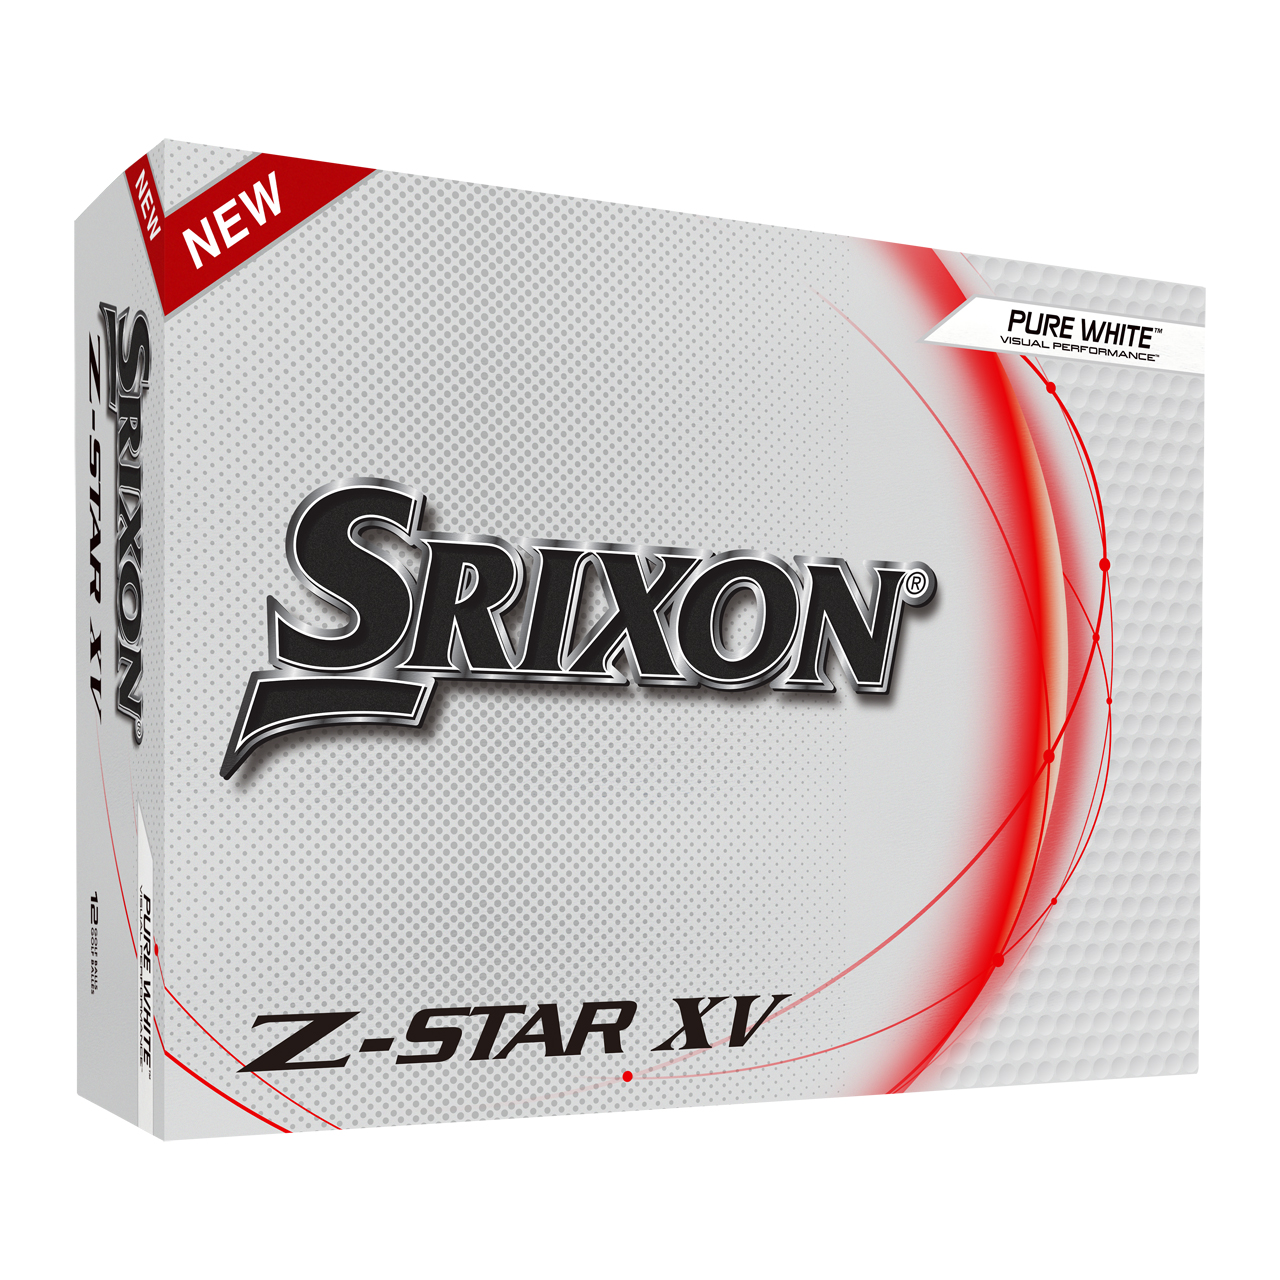 Z-Star XV 8, Bälle 3-Pack - Wh